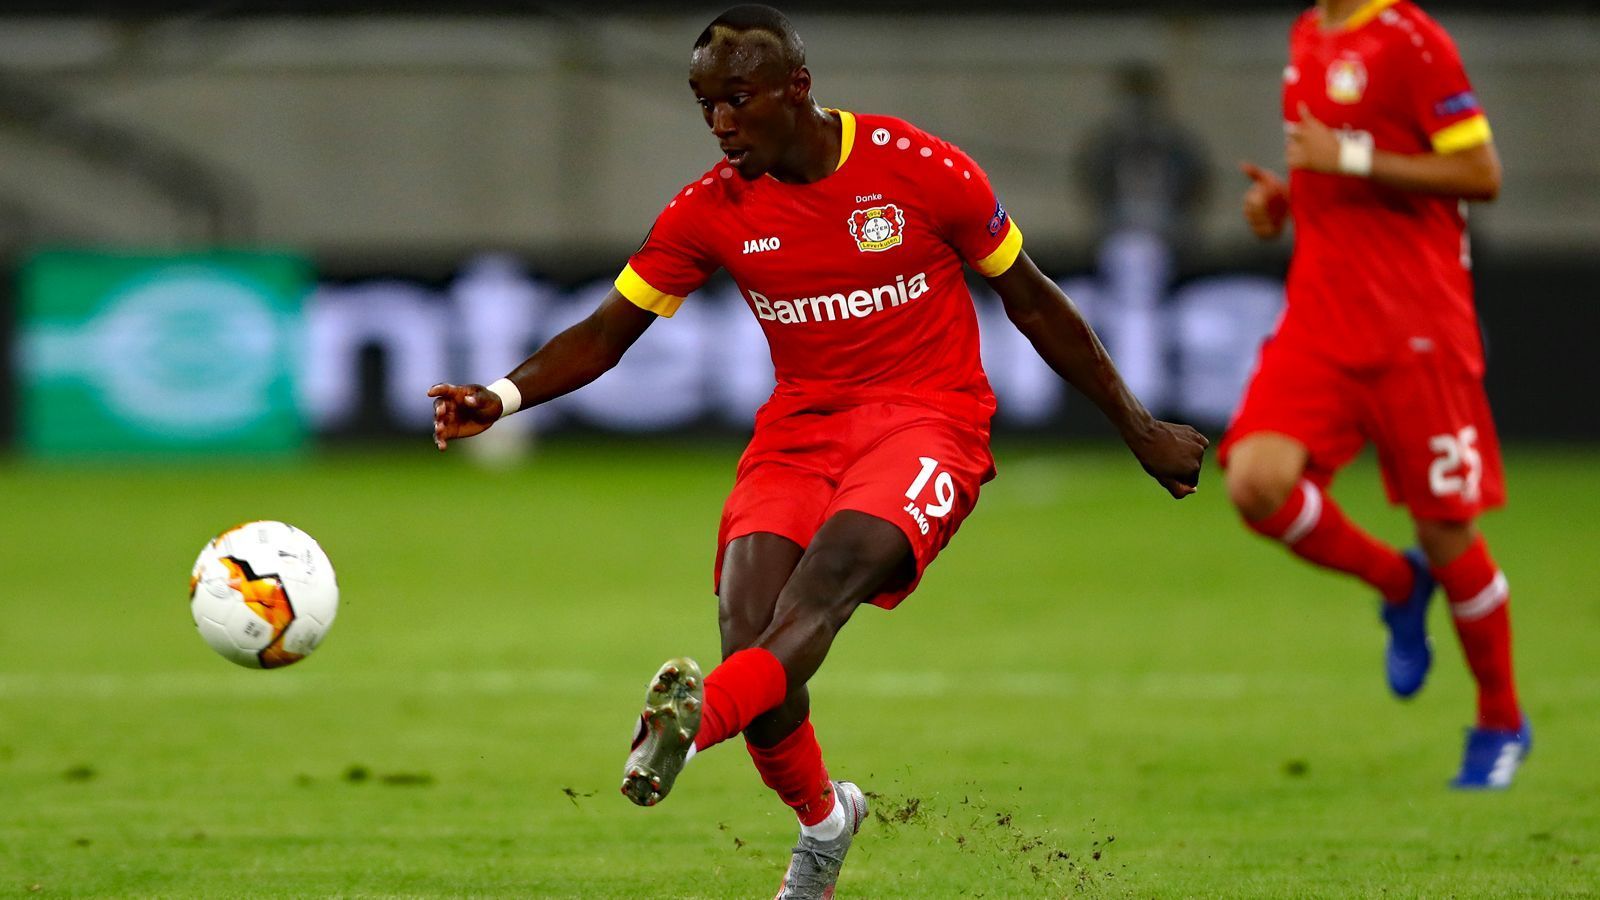 
                <strong>Moussa Diaby (heute Bayer Leverkusen)</strong><br>
                Ähnlich wie Augustin, so war auch der heutige Leverkusener Moussa Diaby für eine kurze Zeit zumindest im PSG-Profikader dabei. In der Saison 2018/19 durfte der 21-Jährige 34 Mal ran, doch auf lange Sicht schien ihm die Perspektive zu fehlen. "Ich hätte geduldig sein können. Aber ich habe nicht gezögert", sagte Diaby bei "L'Equipe" rückblickend auf den Zeitpunkt, als er das Angebot aus Leverkusen erhielt. Dennoch träumt der Außenbahnspieler von einer späteren Rückkehr zu PSG: "Als gestandener Spieler zurückzukommen, ist für mich immer im Hinterkopf. Ich sage mir: Warum nicht?" In seiner ersten Saison kam Diaby für Bayer zu 39 Pflichtspielen mit je acht Toren bzw. Vorlagen. 
              